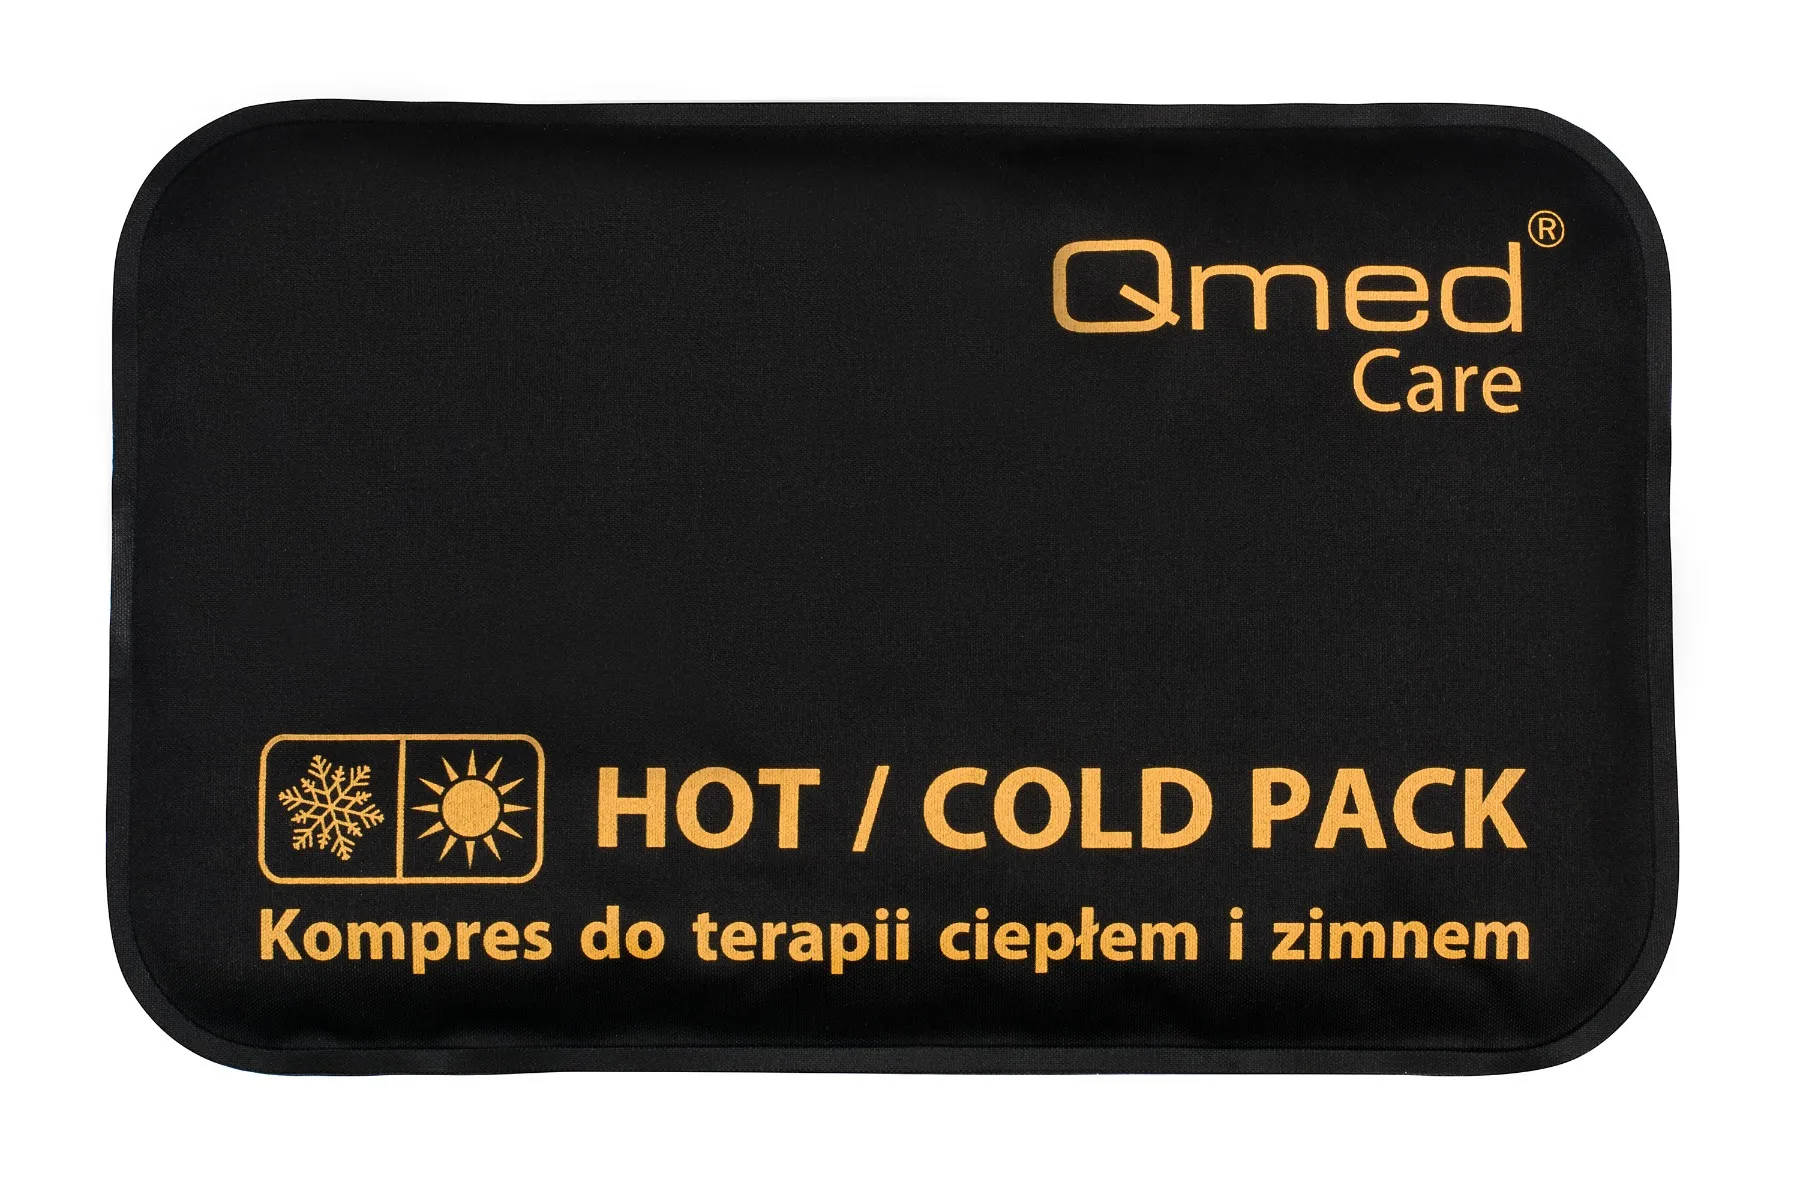 Qmed Hot Cold Pack kompres do terapii ciepłem i zimnem 20x30 cm, 1 szt. 